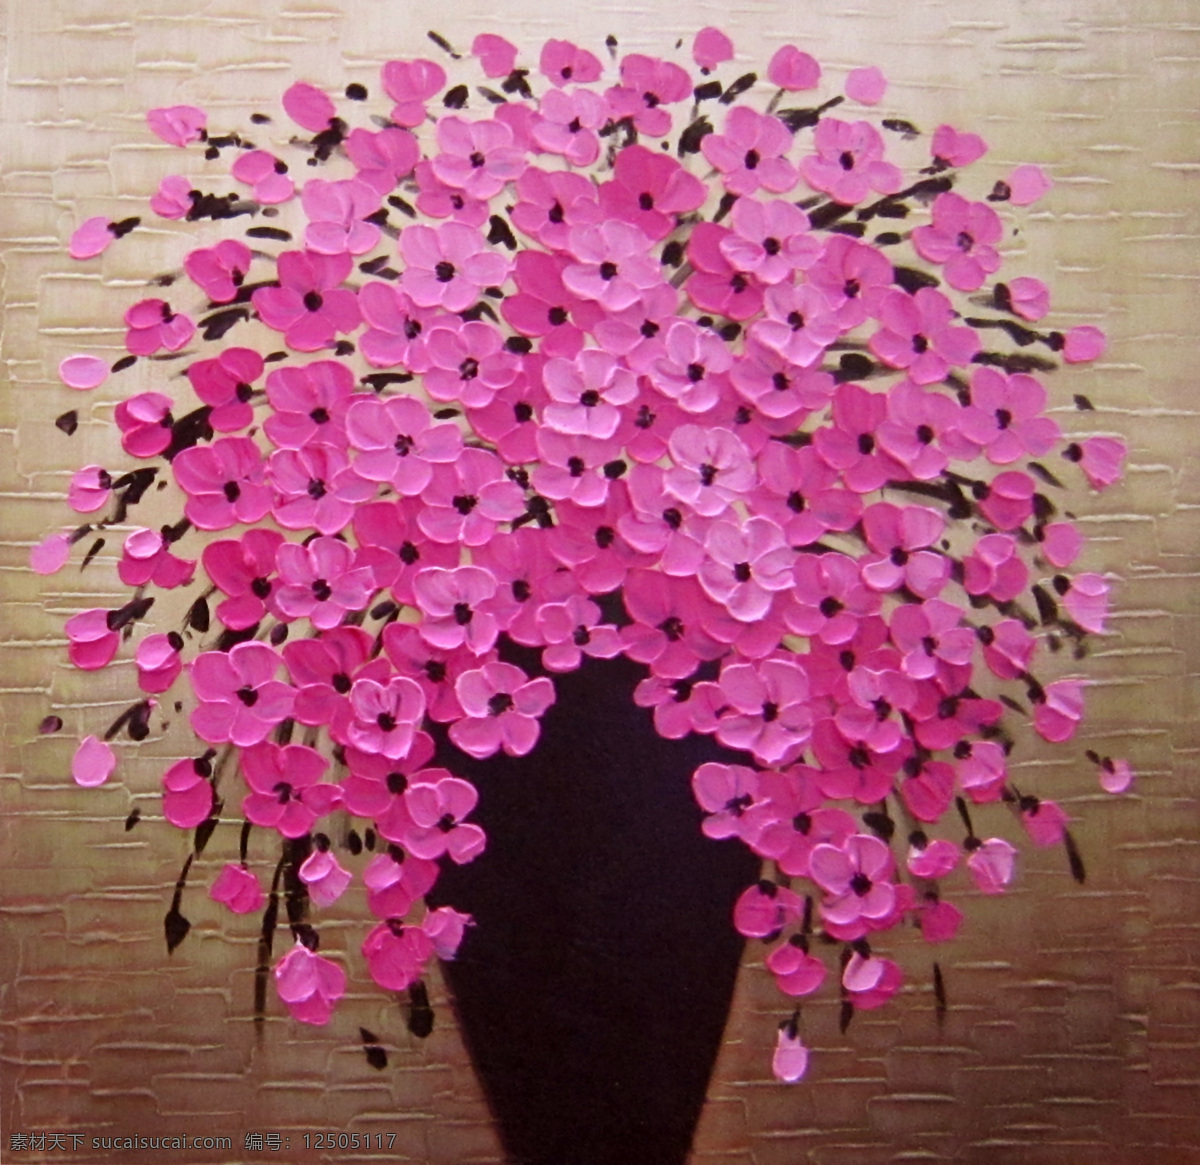 粉色小花 花瓶 绘画书法 肌理 手绘油画 文化艺术 粉色 花卉 油画 设计素材 模板下载 粉色花卉油画 刀画技法 装饰素材